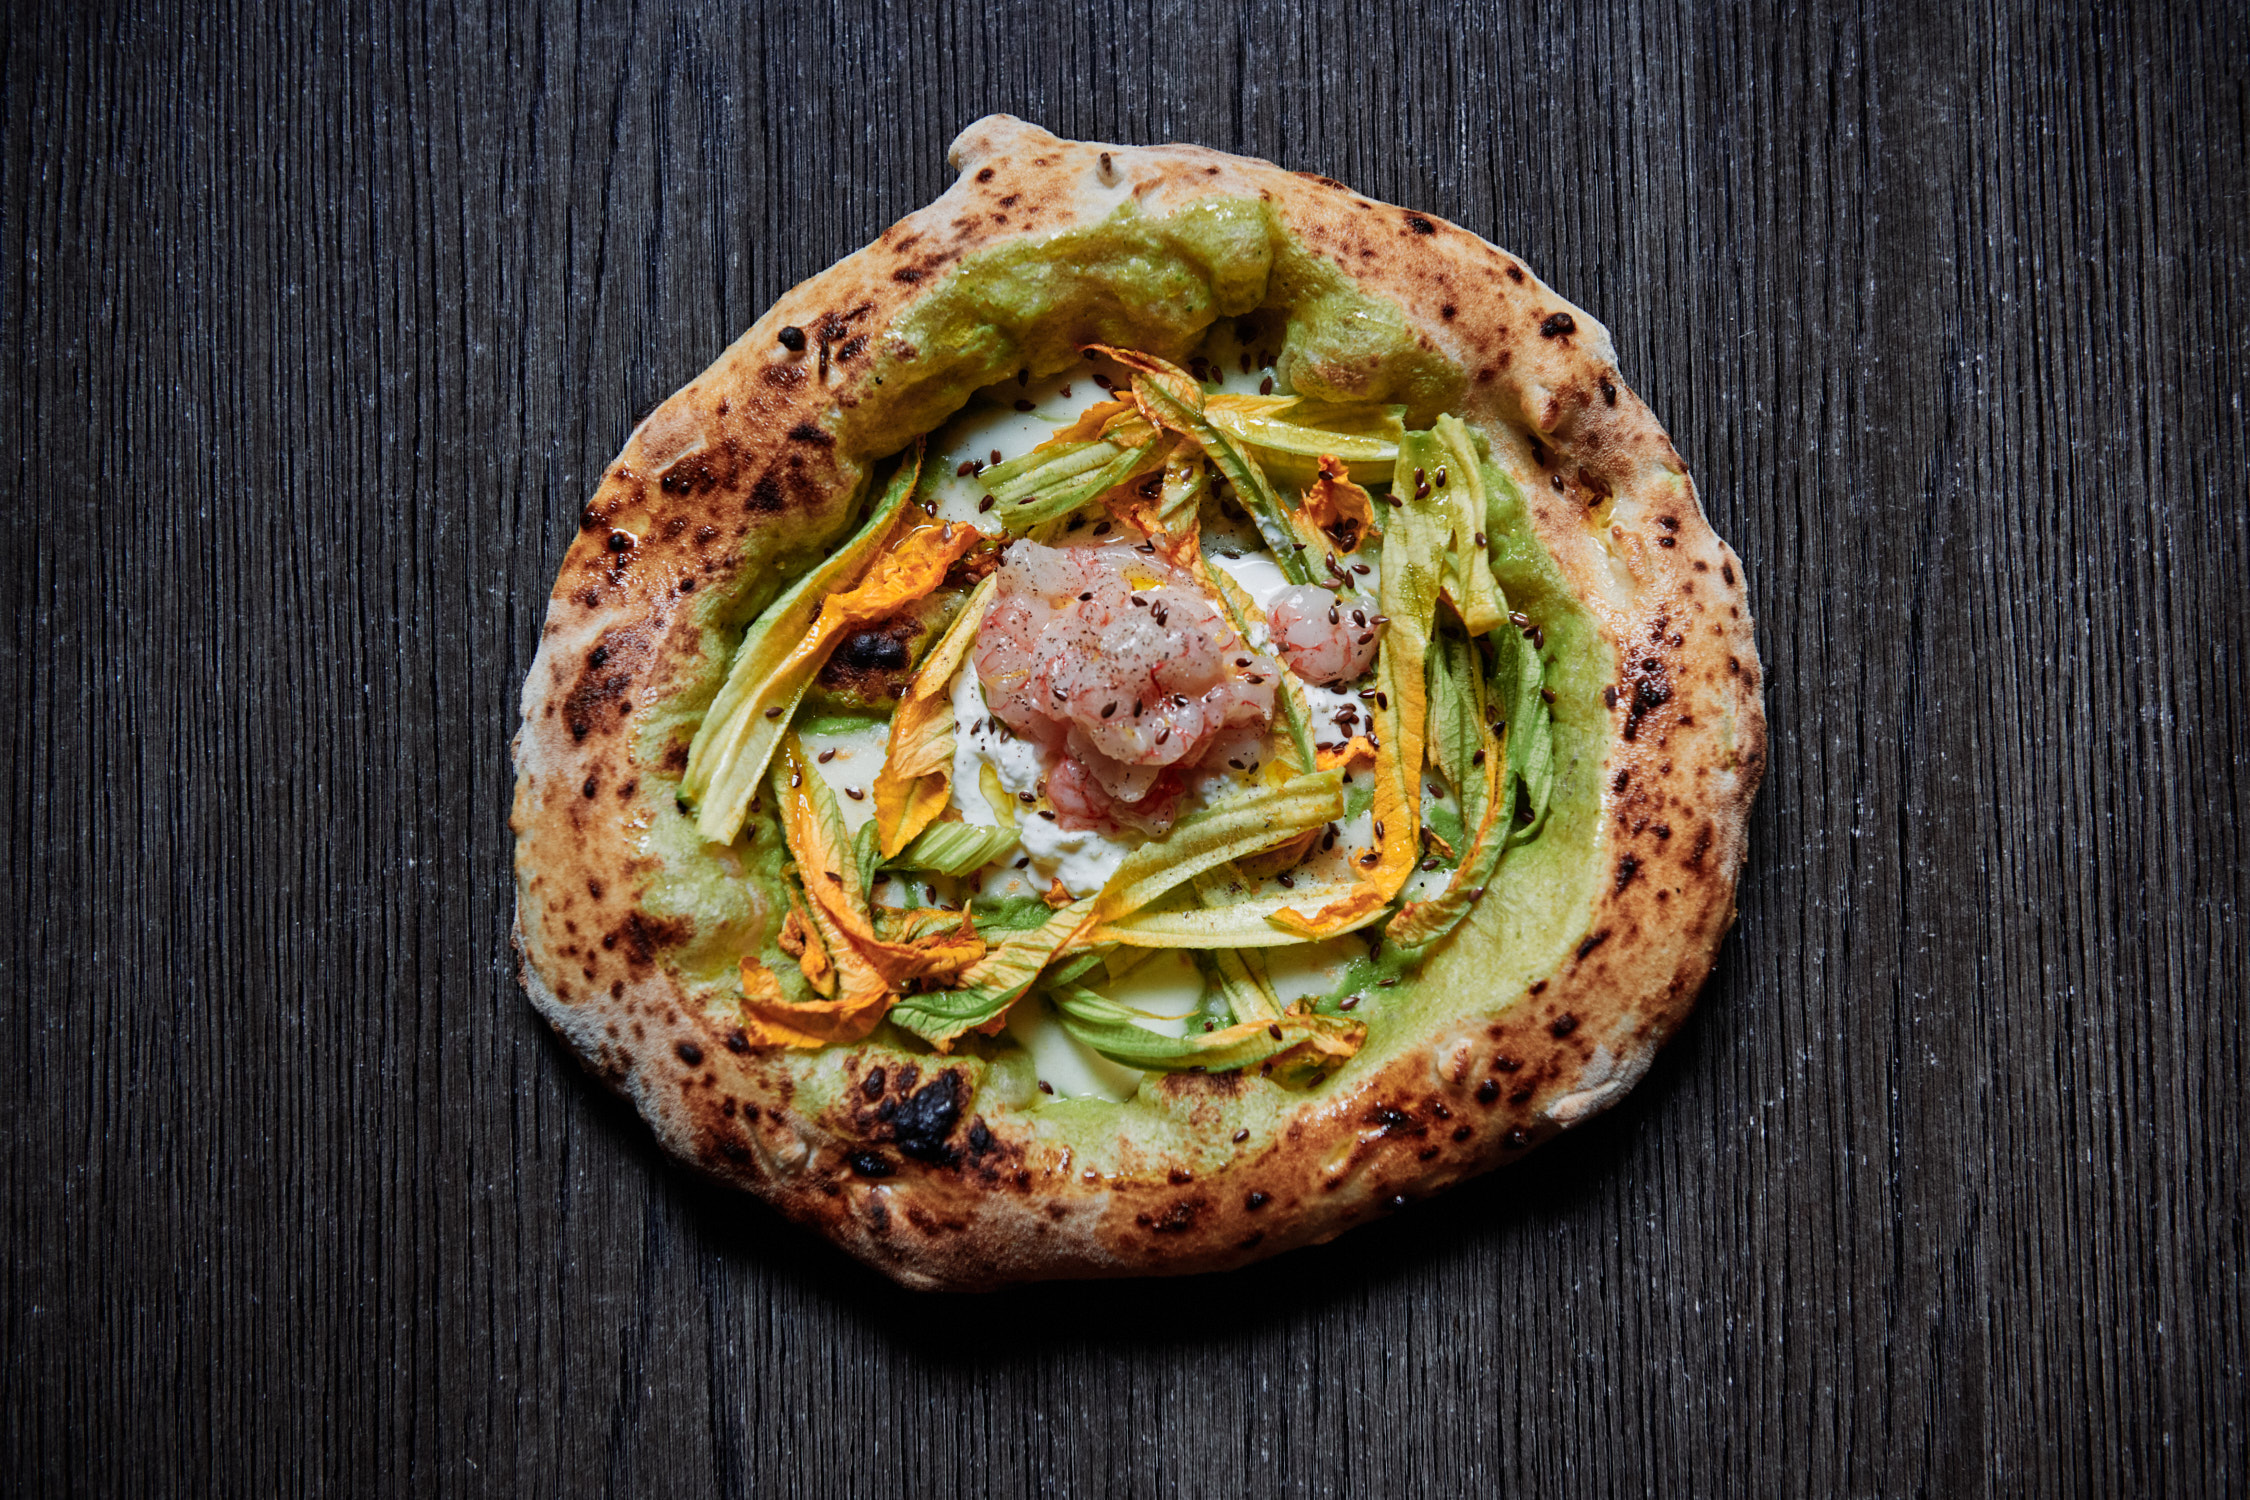 Vicolo battisti: A Napoletana Pizza Experience